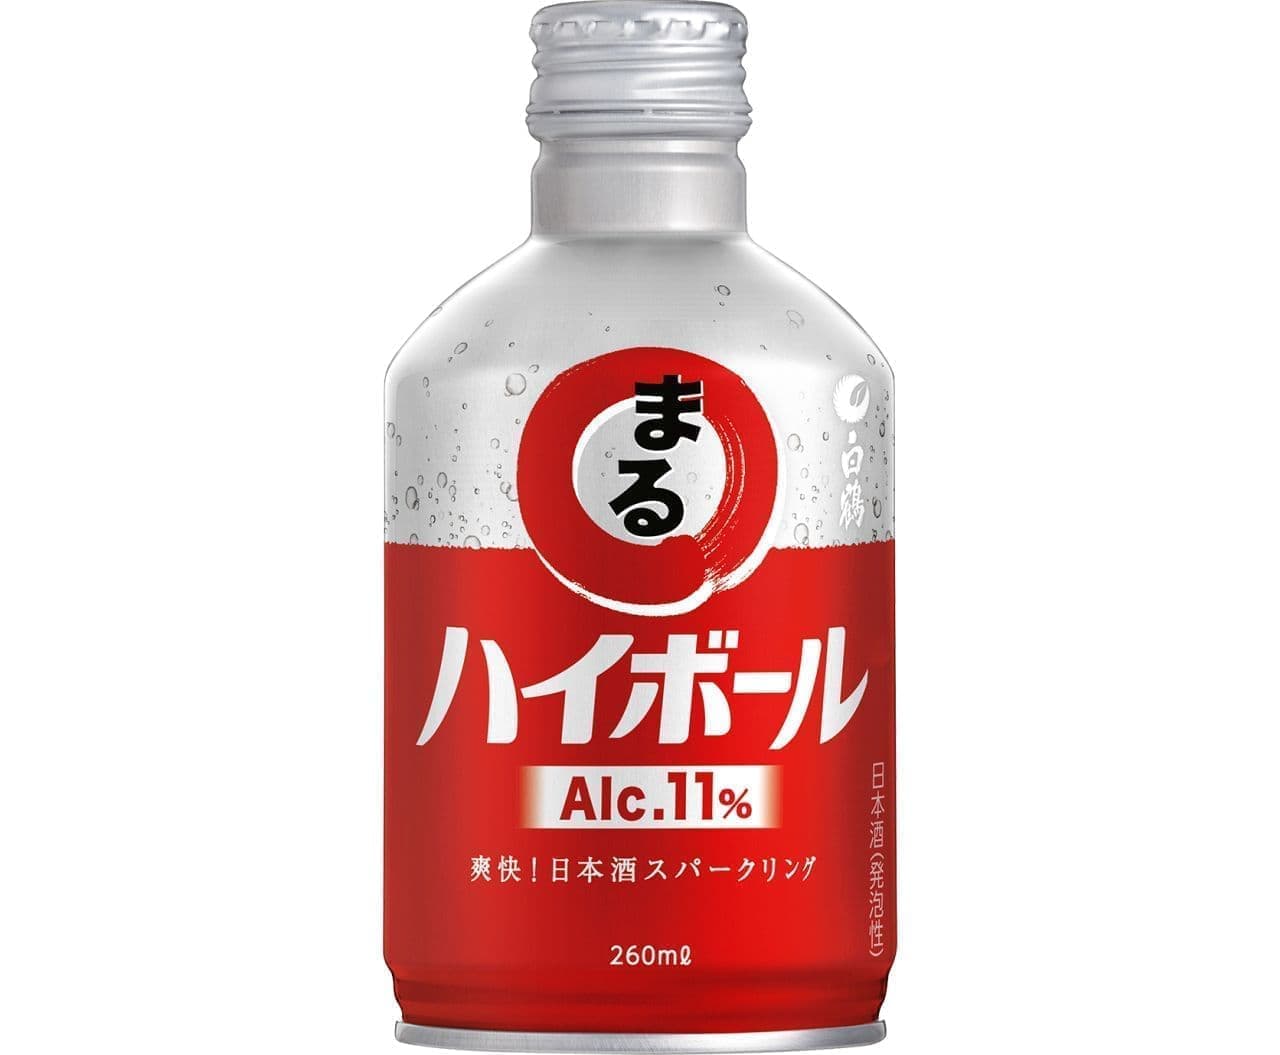 スパークリング日本酒「白鶴 まる ハイボール」